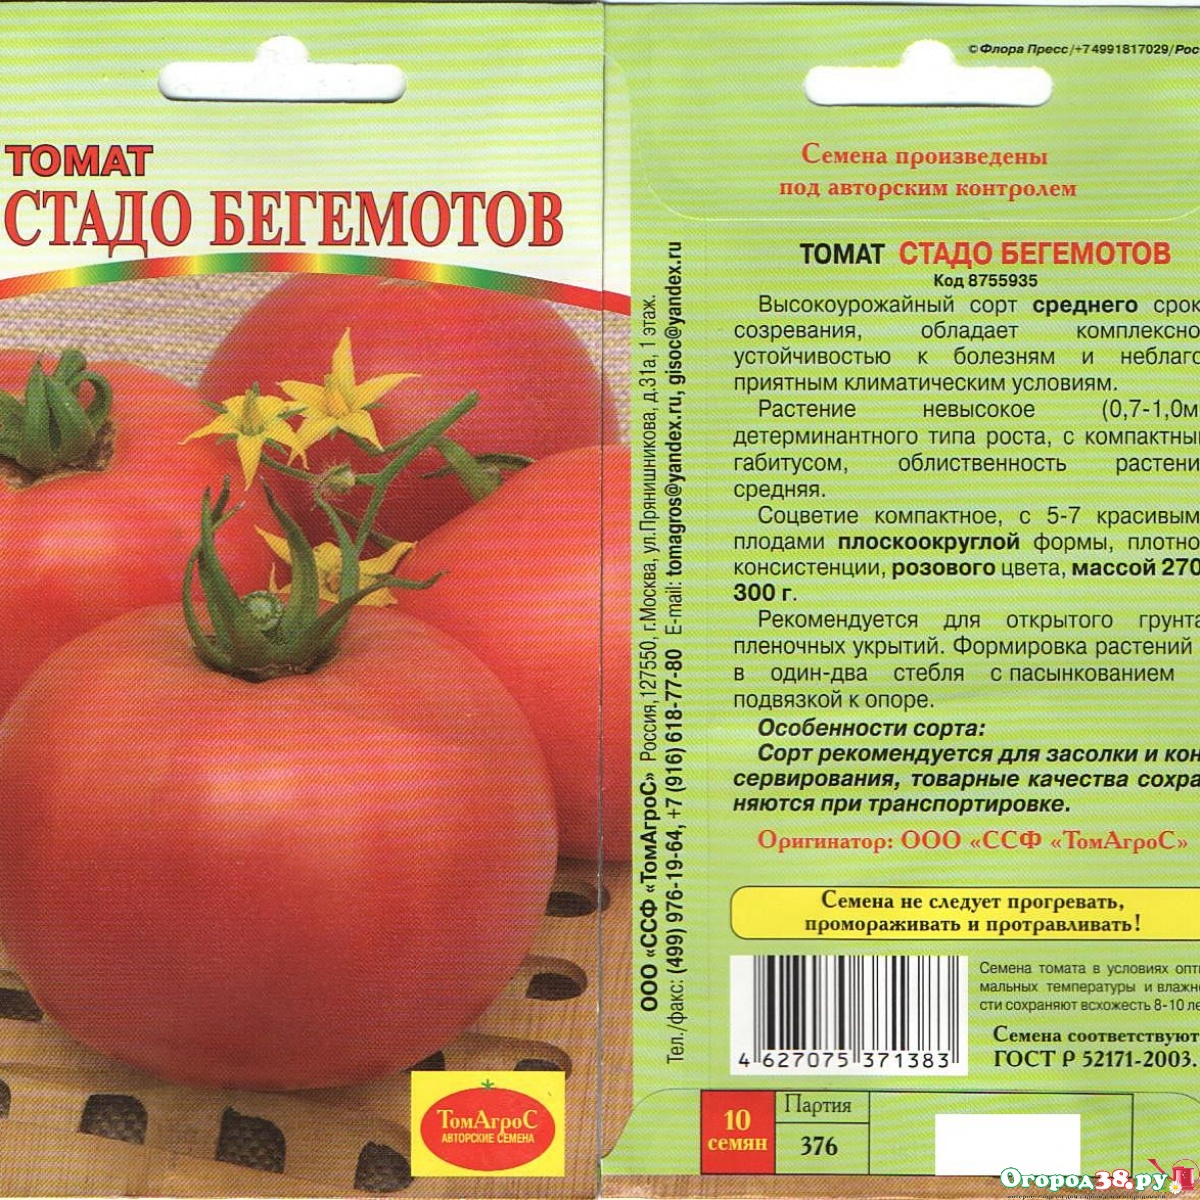 Описание среднеспелого томата Рокер и правила выращивания сорта рассадным методом